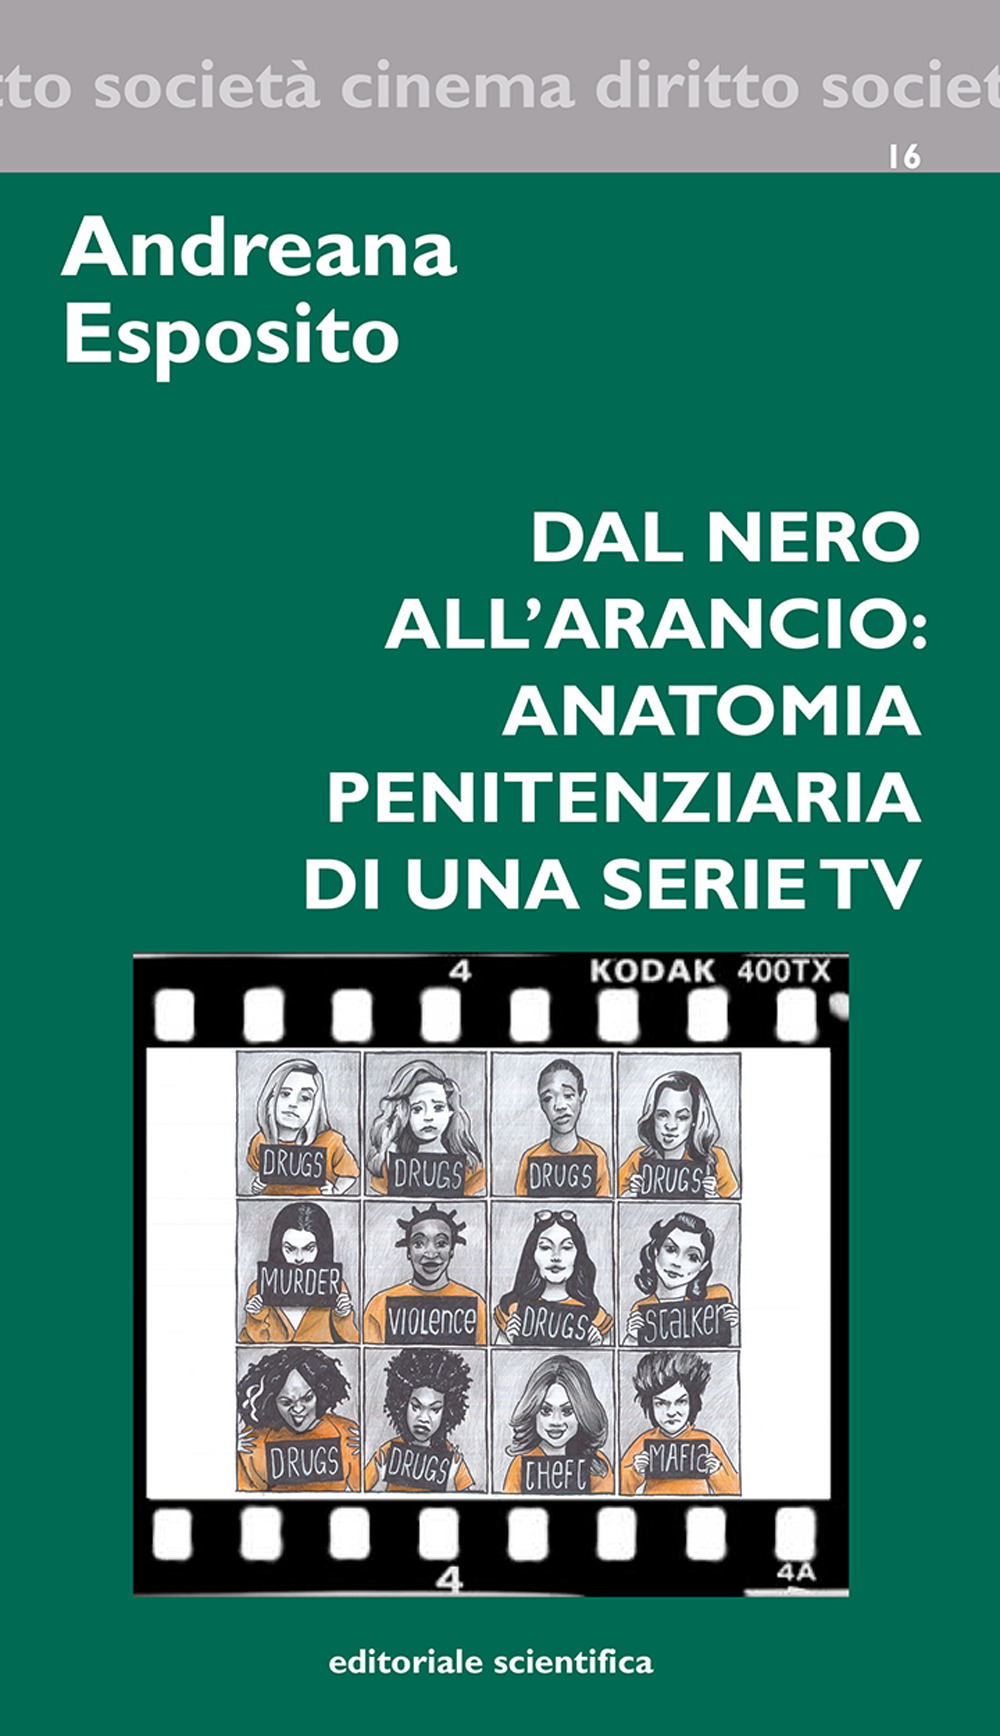 Dal nero all'arancio: anatomia penitenziaria di una serie TV